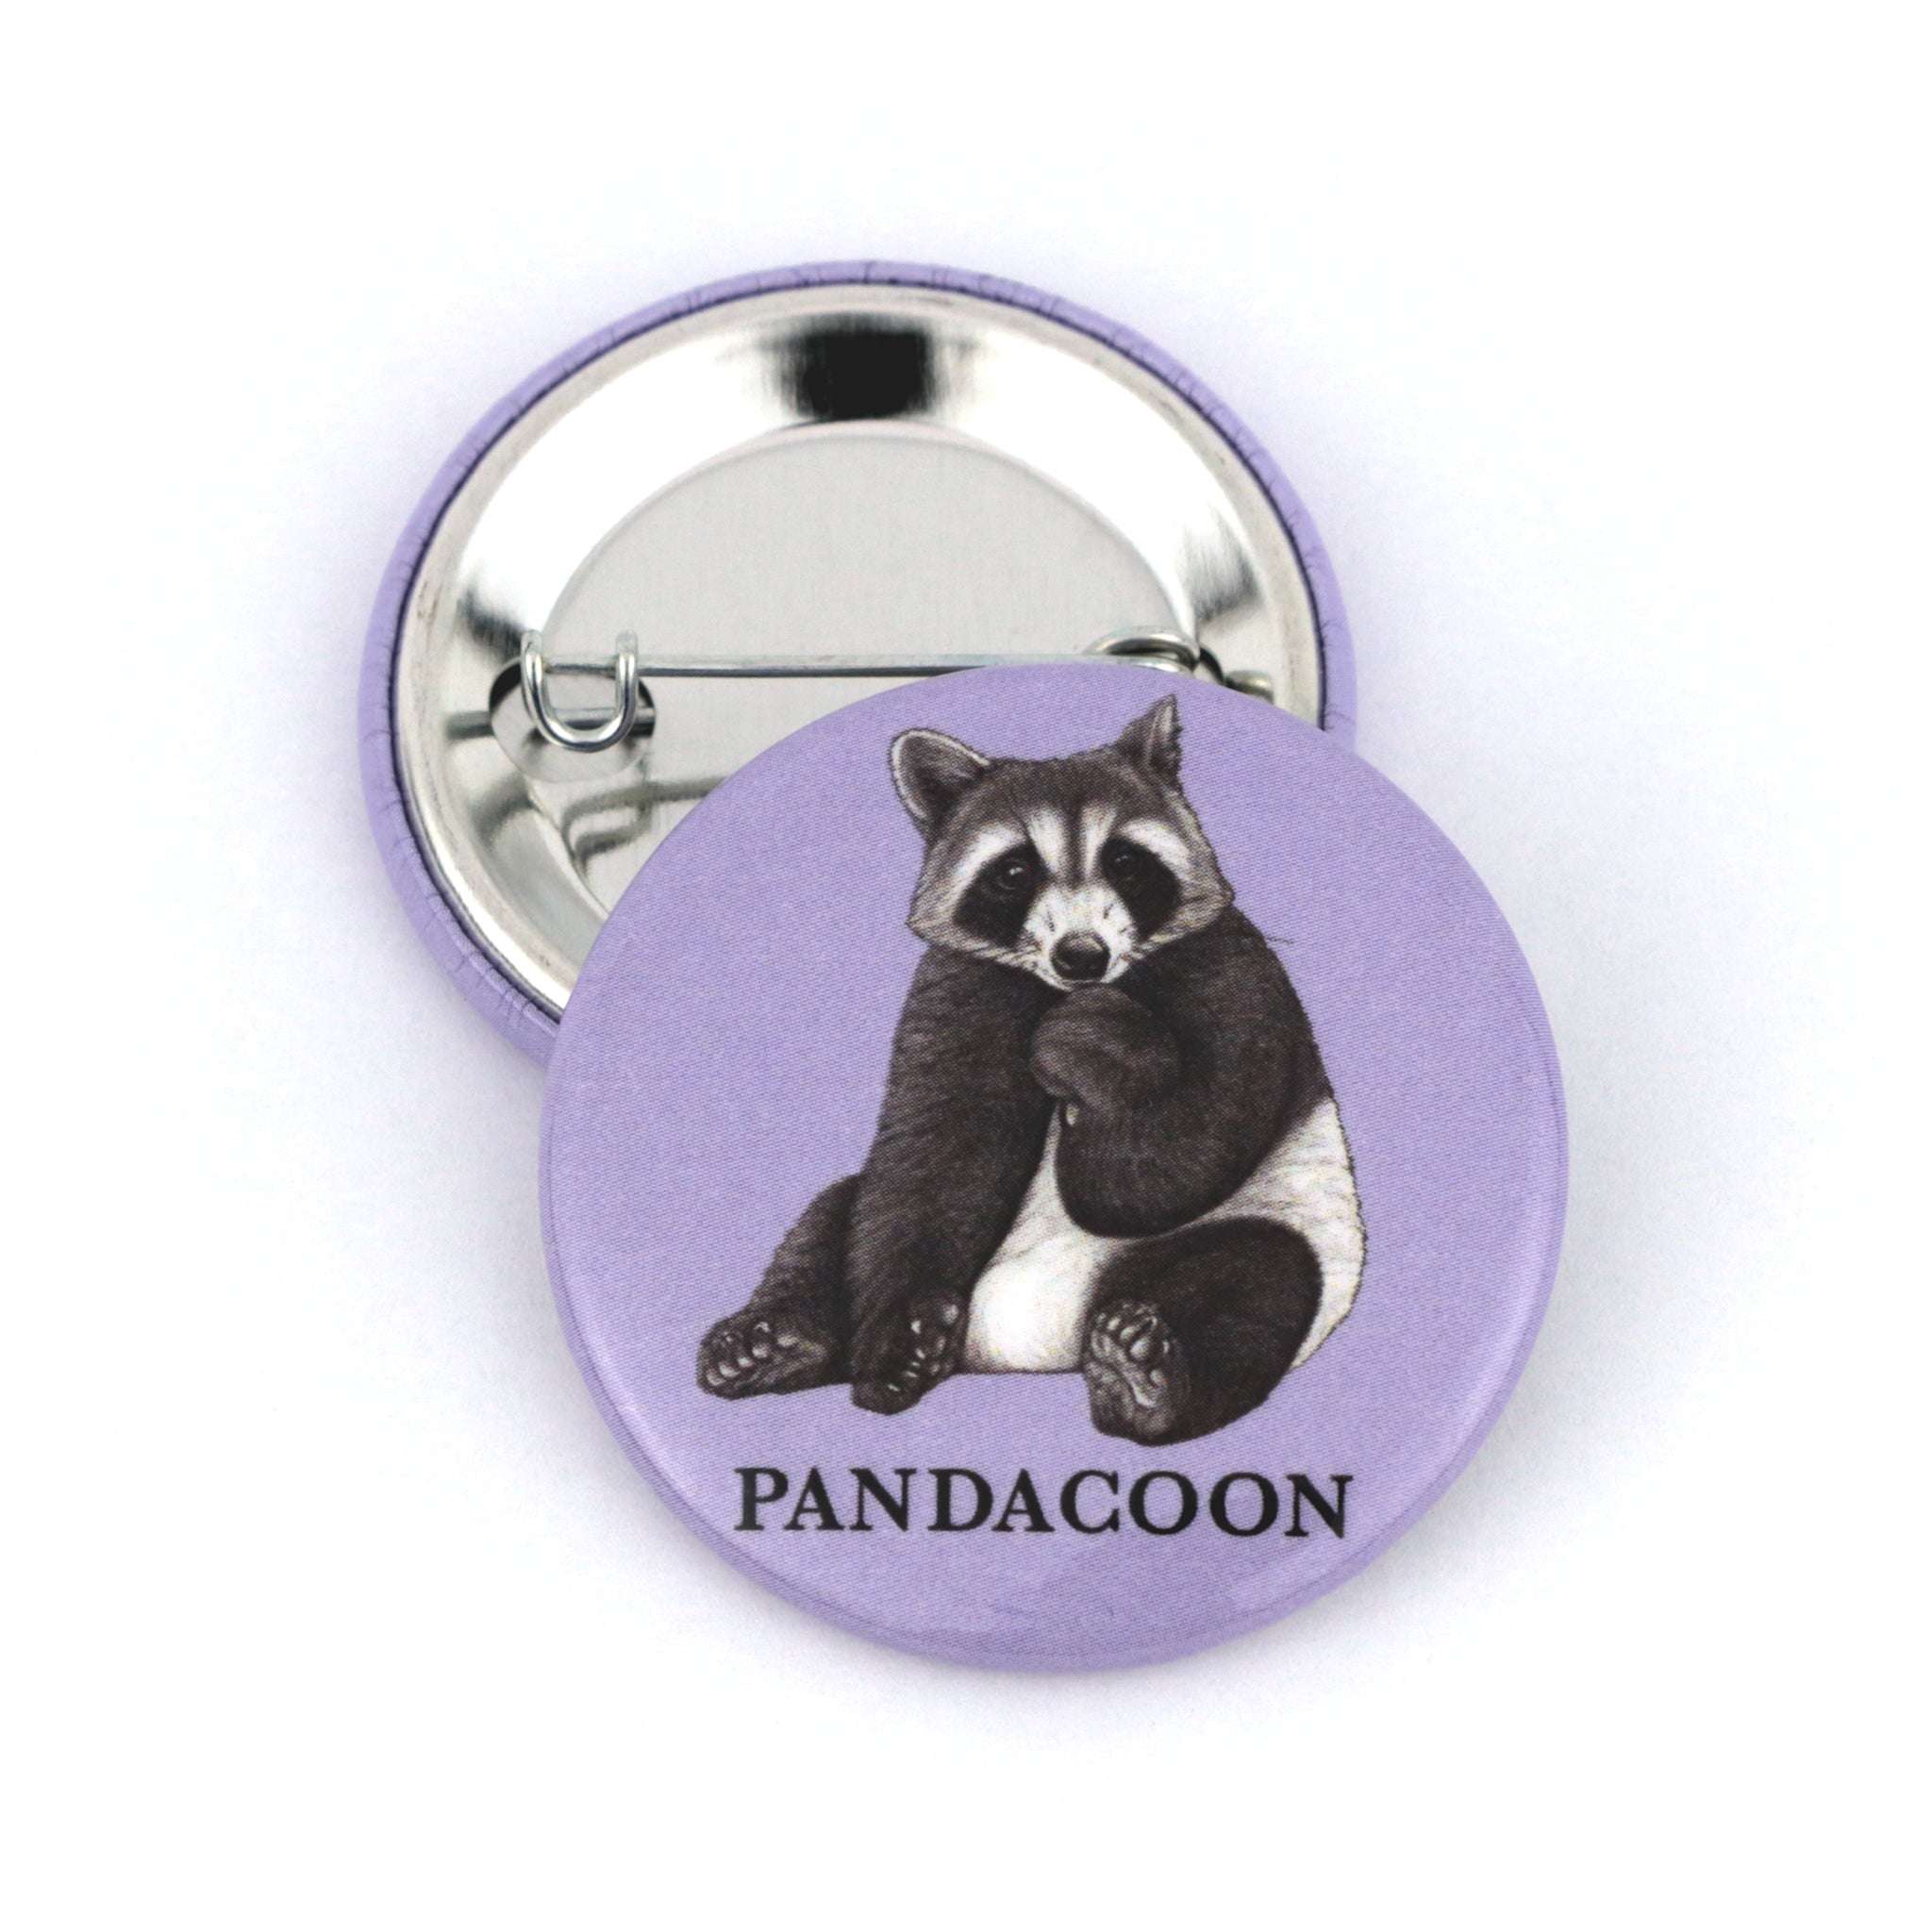 Pandacoon | Panda + Raccoon Hybrid Animal | 1.5" Pinback Button